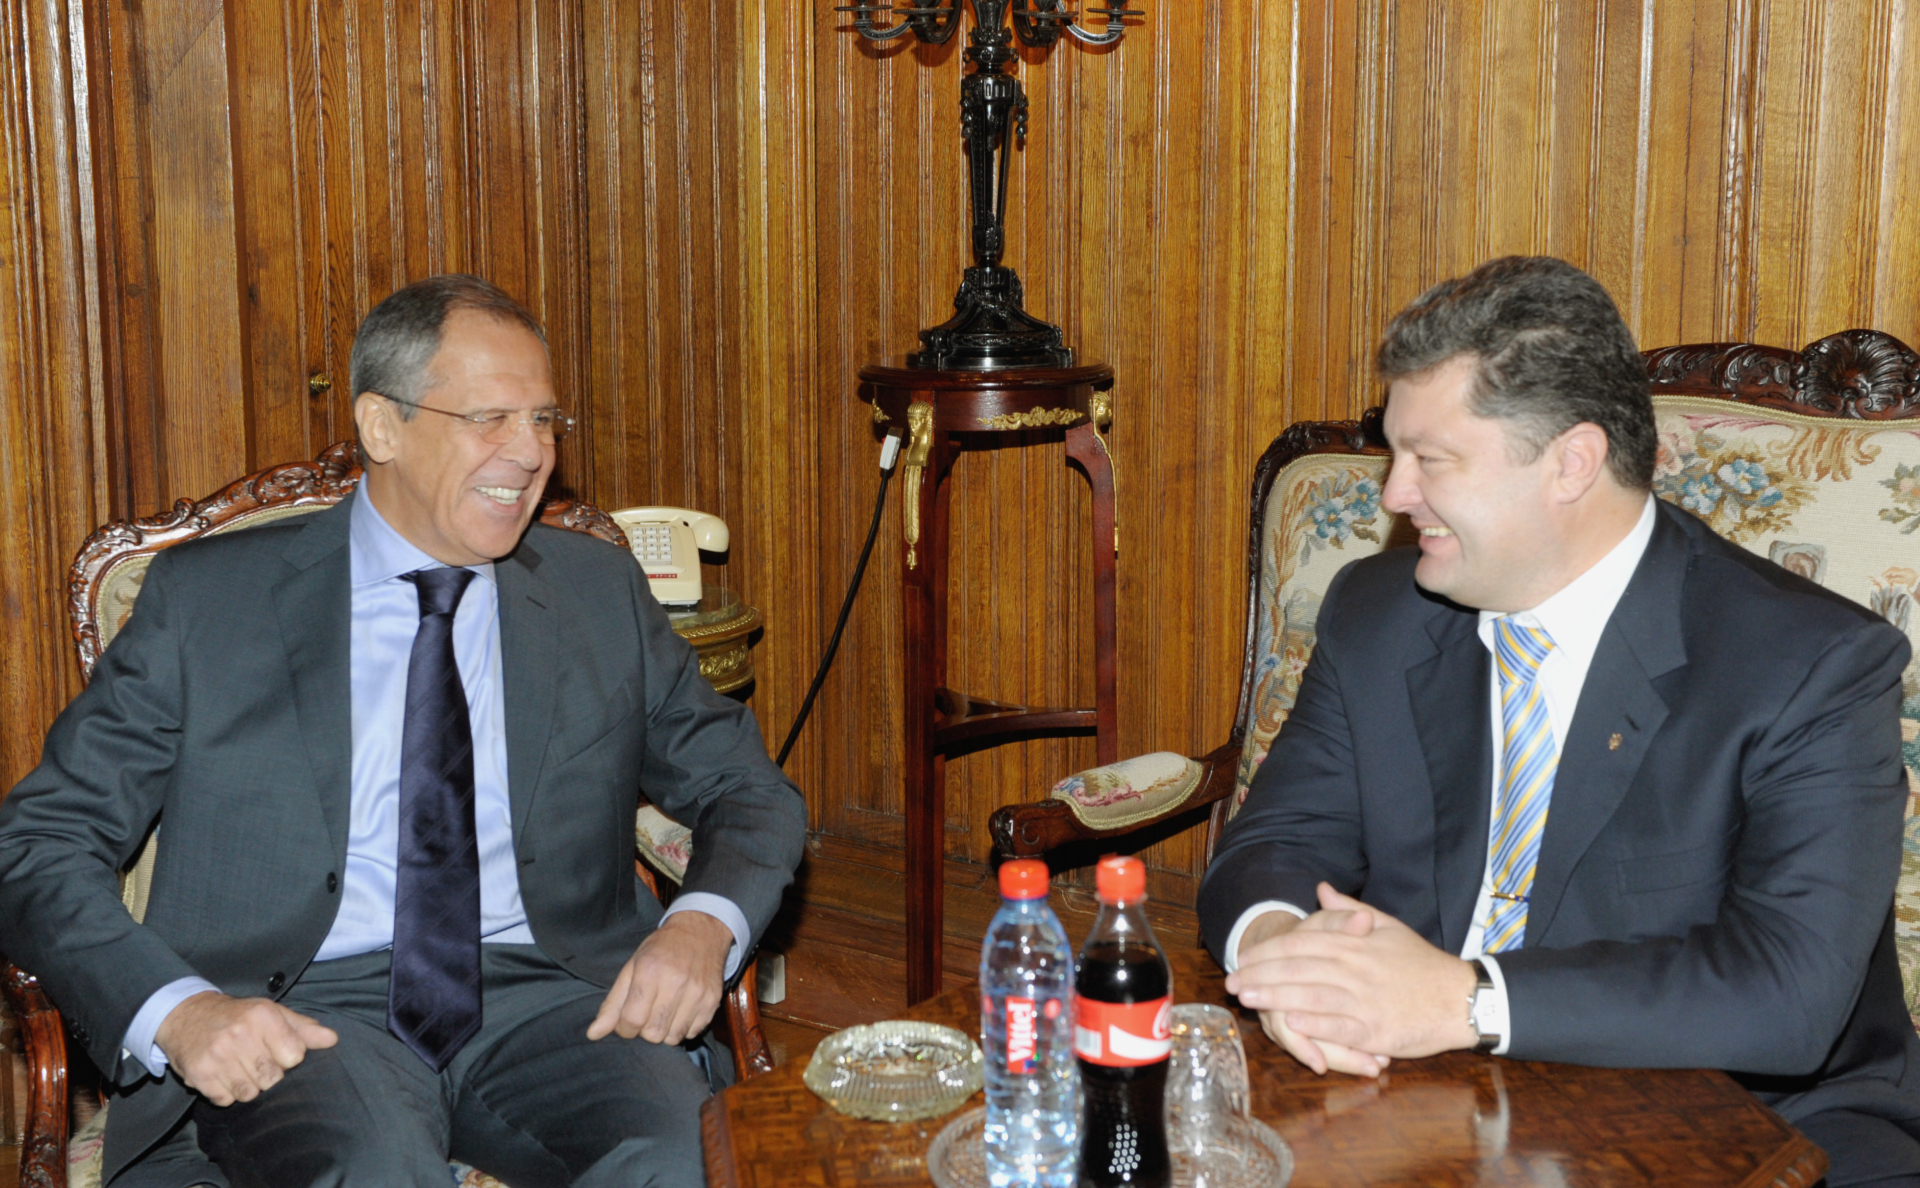 Сергей Лавров и Петр Порошенко на встрече министров иностранных дел в 2009 году